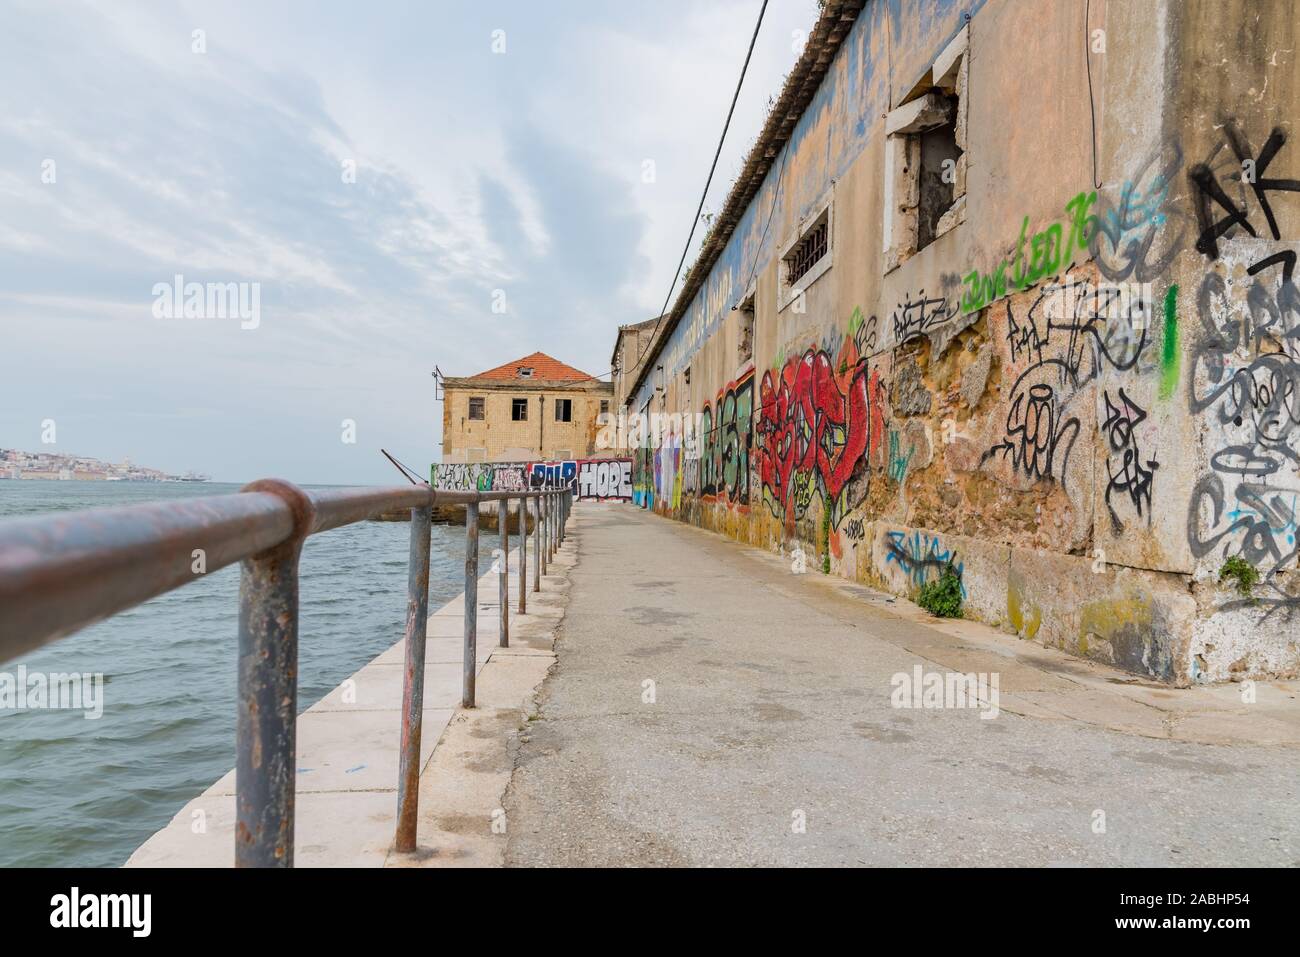 PORTUGAL 23.9.2018 ALMADADA, imagen en color antiguo y deteriorado edificios Ginjal Pier en Cacilhas, Almada Foto de stock